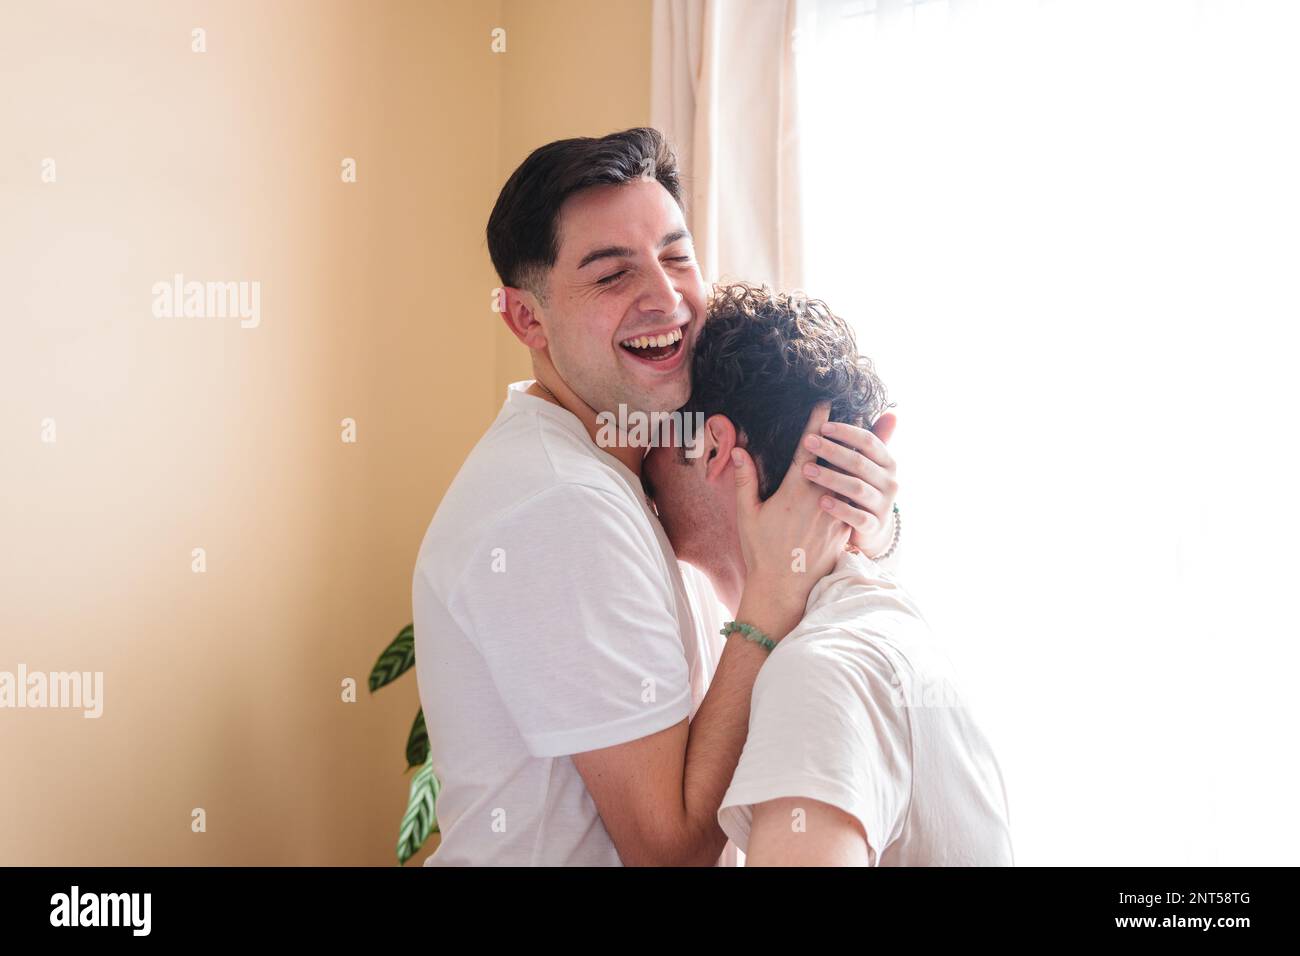 Ein junges schwules Paar, das lacht und sich romantisch umarmt und berührt. LGBT-Beziehung Stockfoto